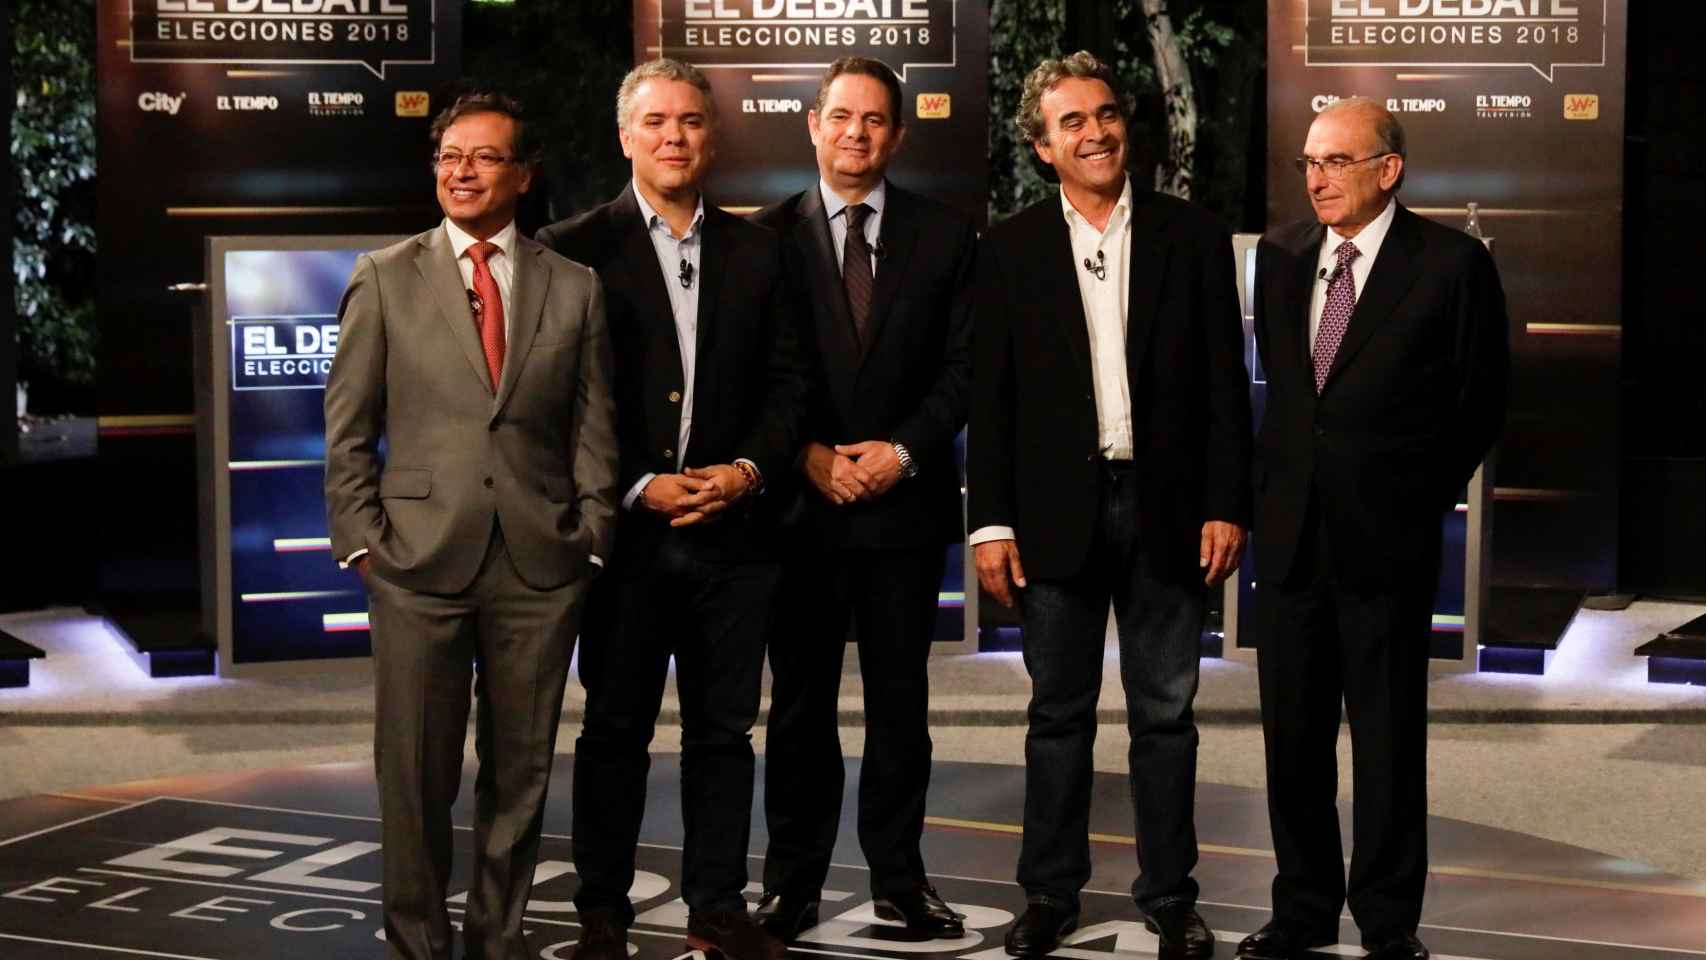 Gustavo Petro, Ivan Duque, German Vargas Lleras, Sergio Fajardo y Humberto de la Calle